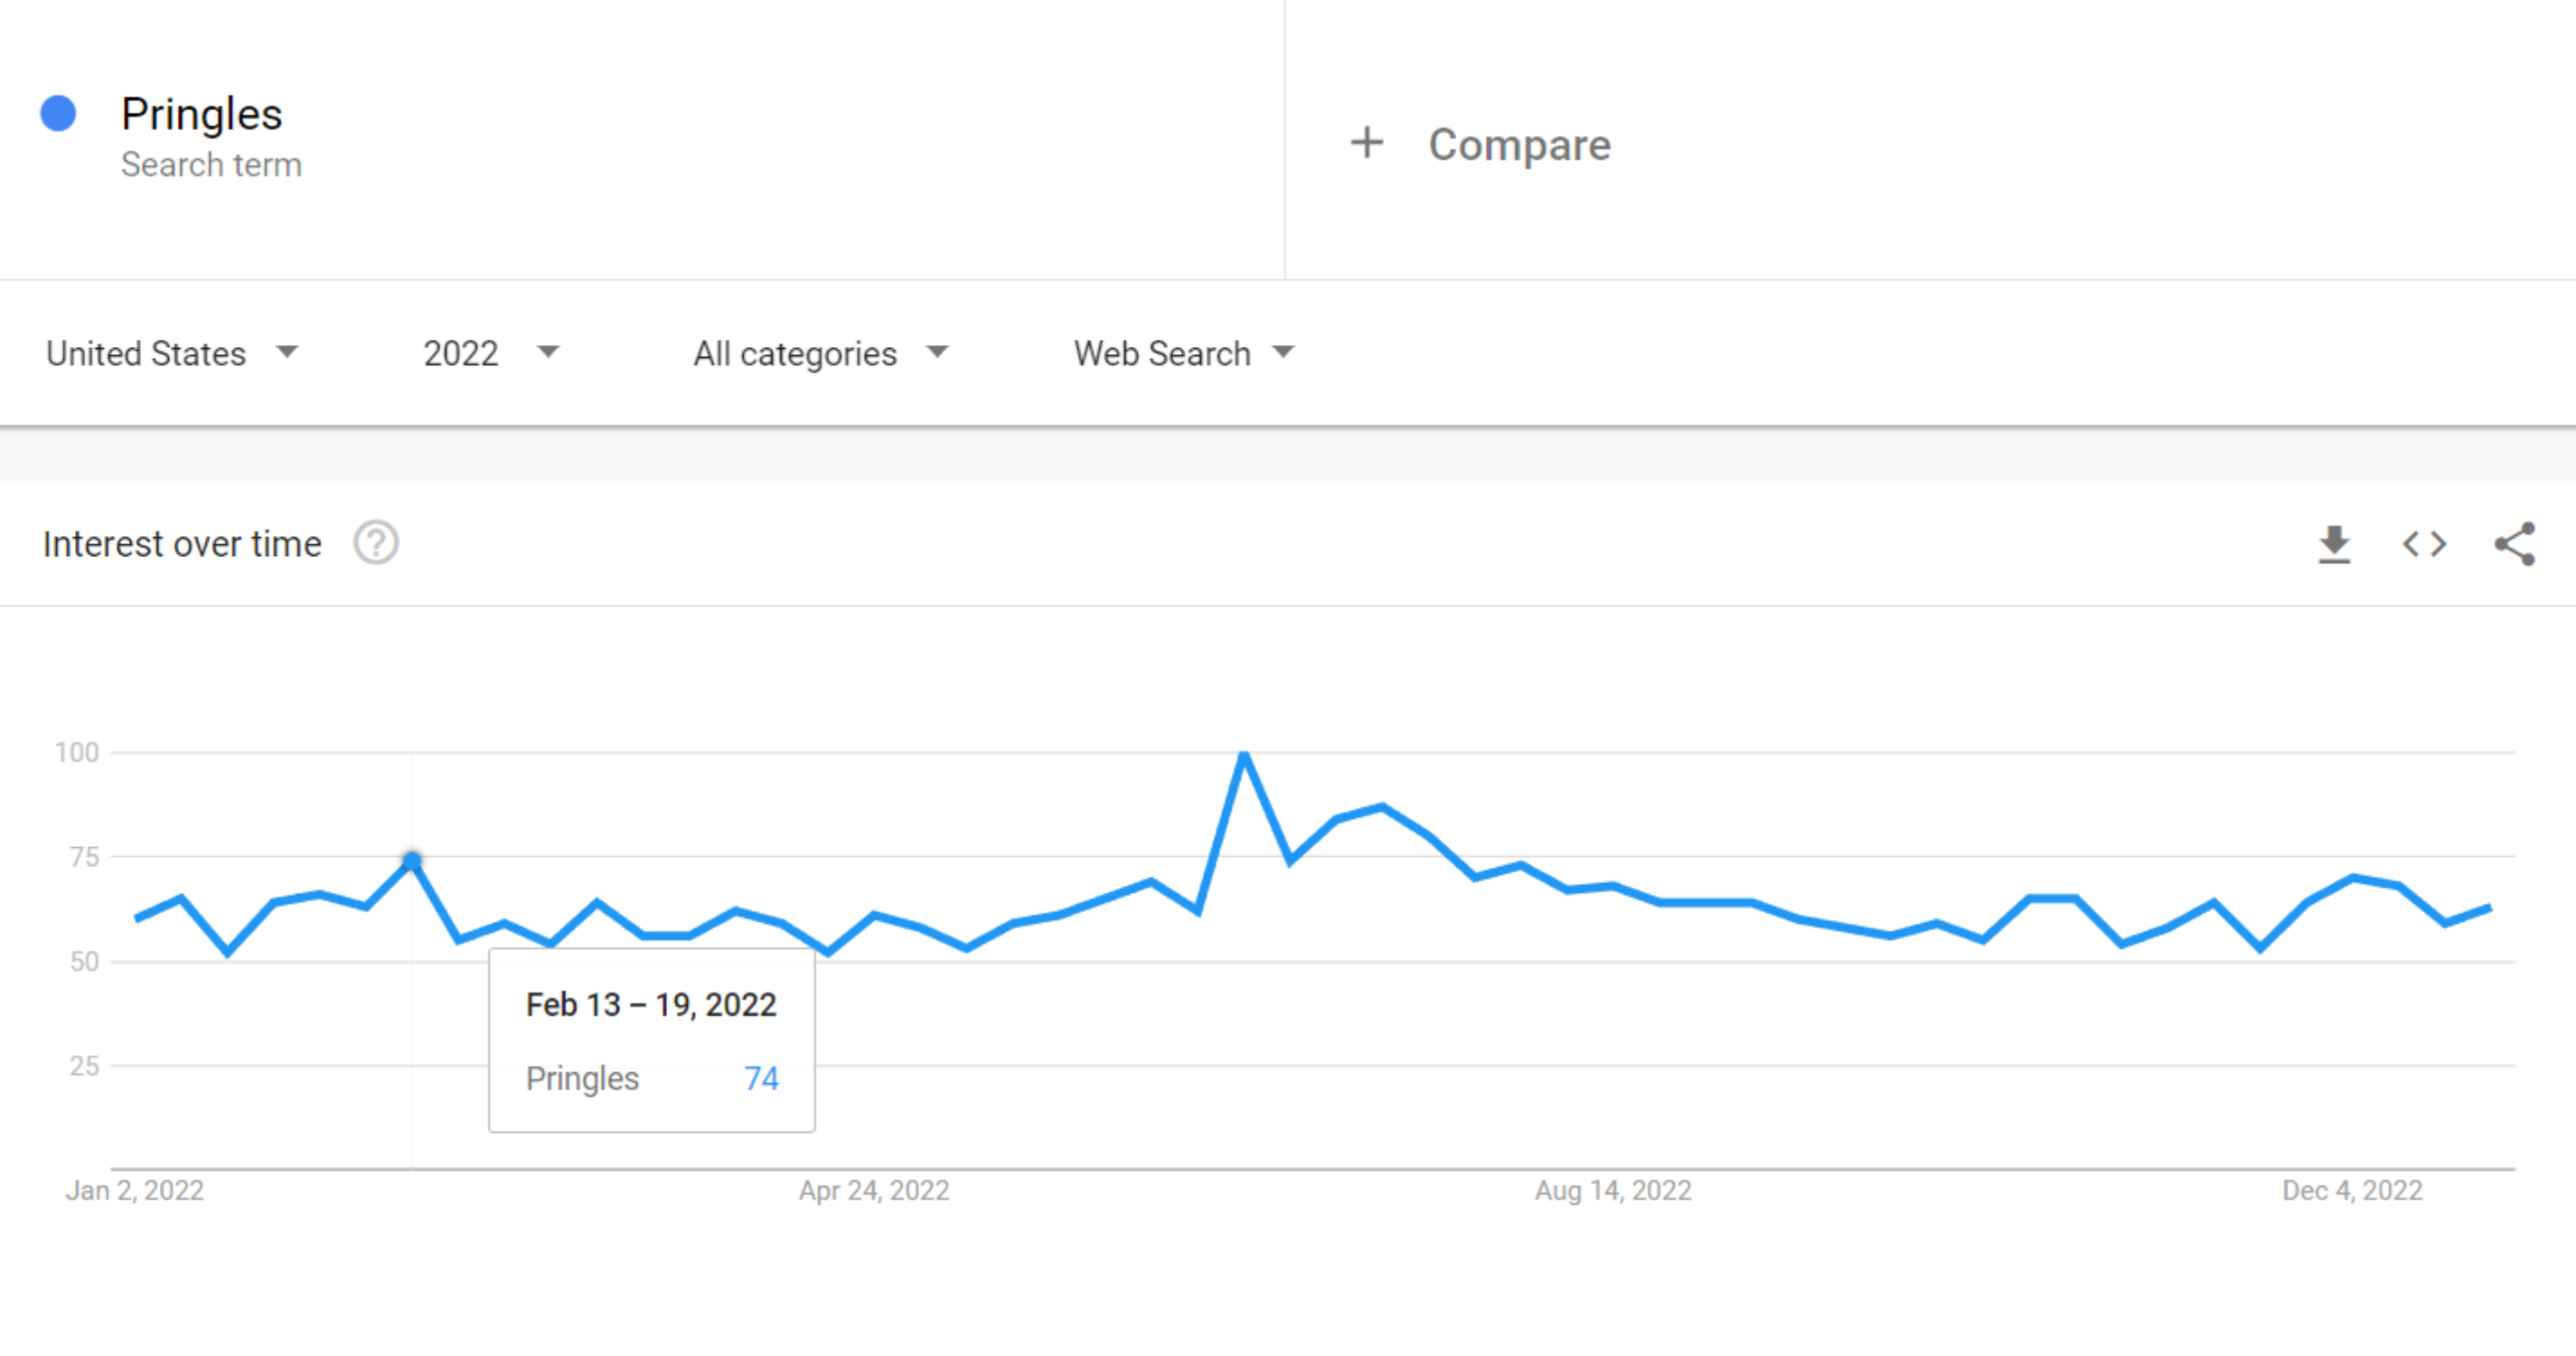 Pringles Google Trends Data